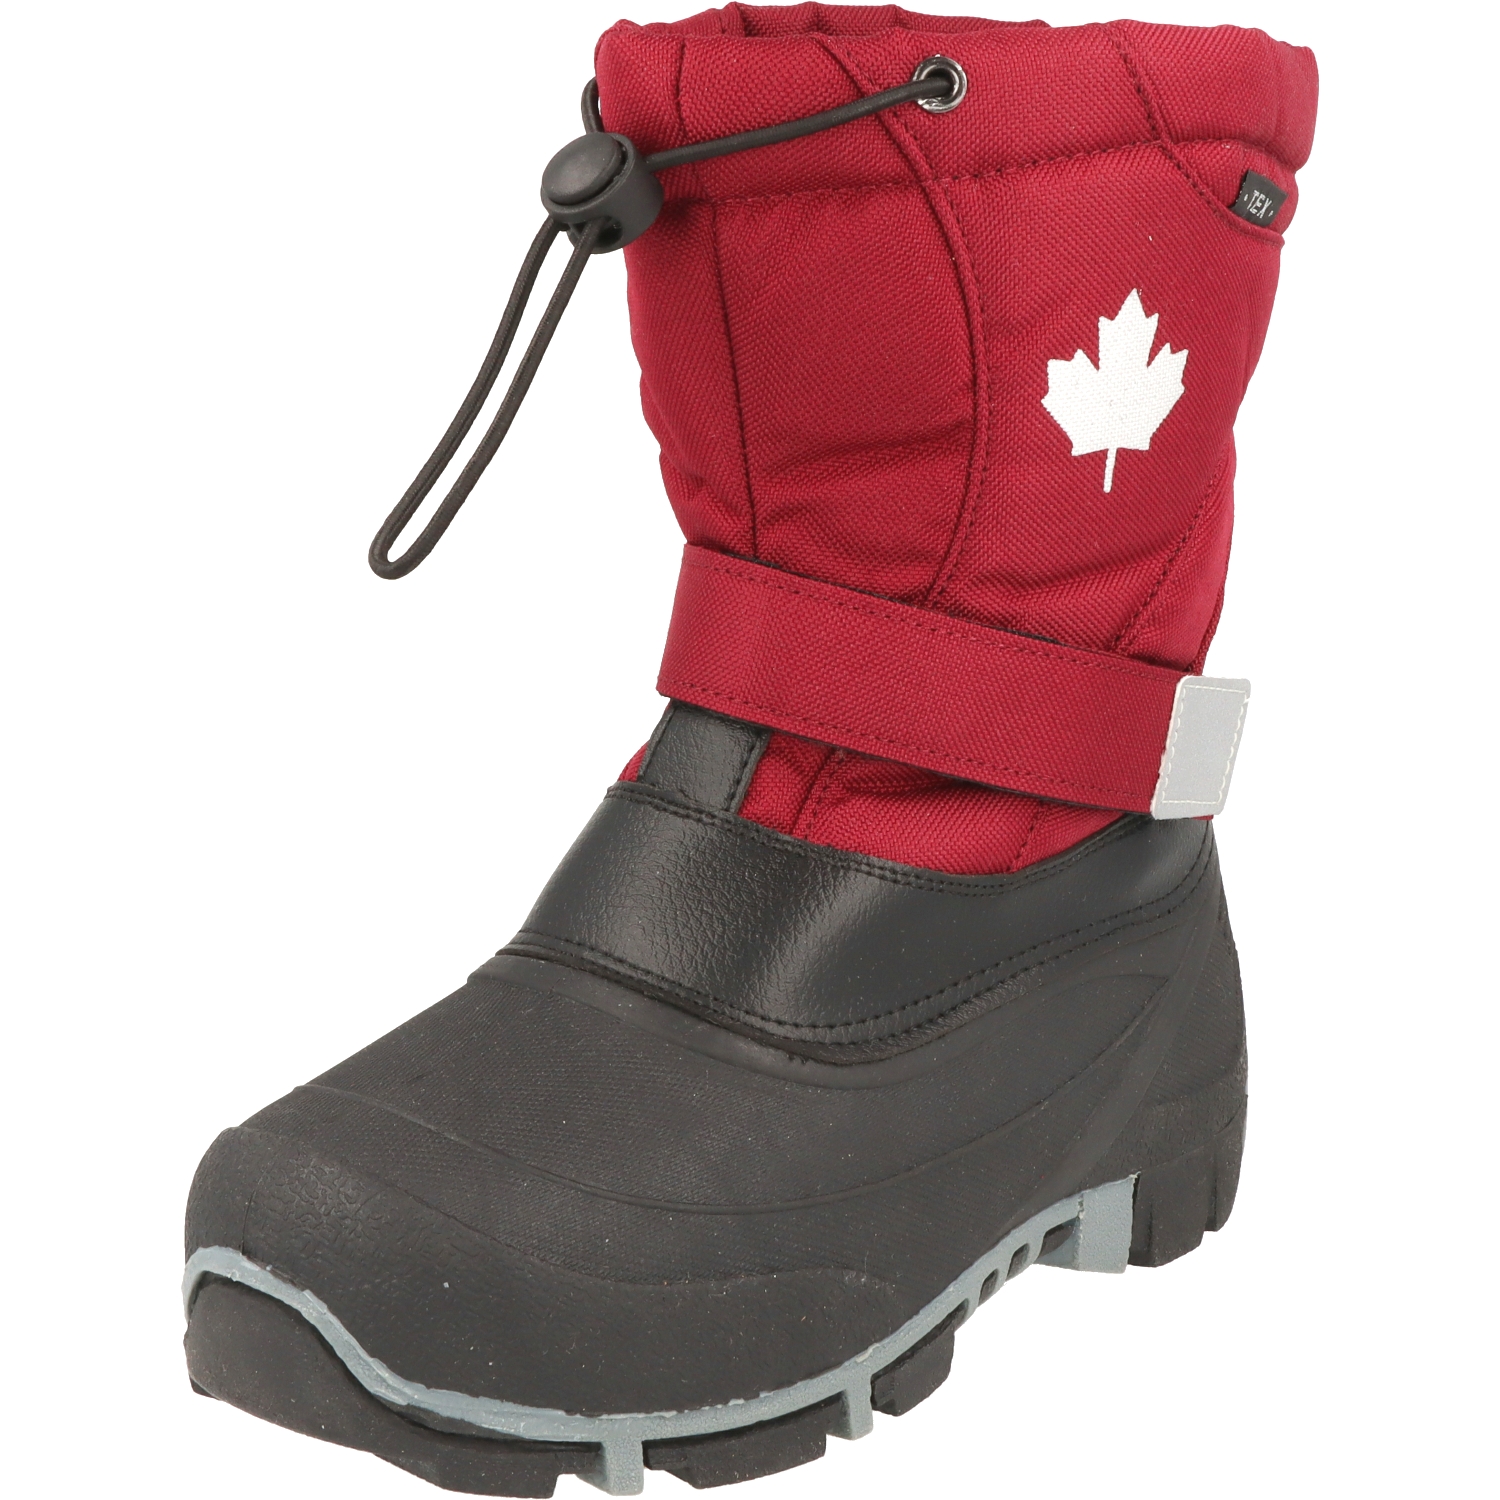 Indigo Canadians 467-185 Kinder Winter Stiefel Snow Boots Berry gefüttert